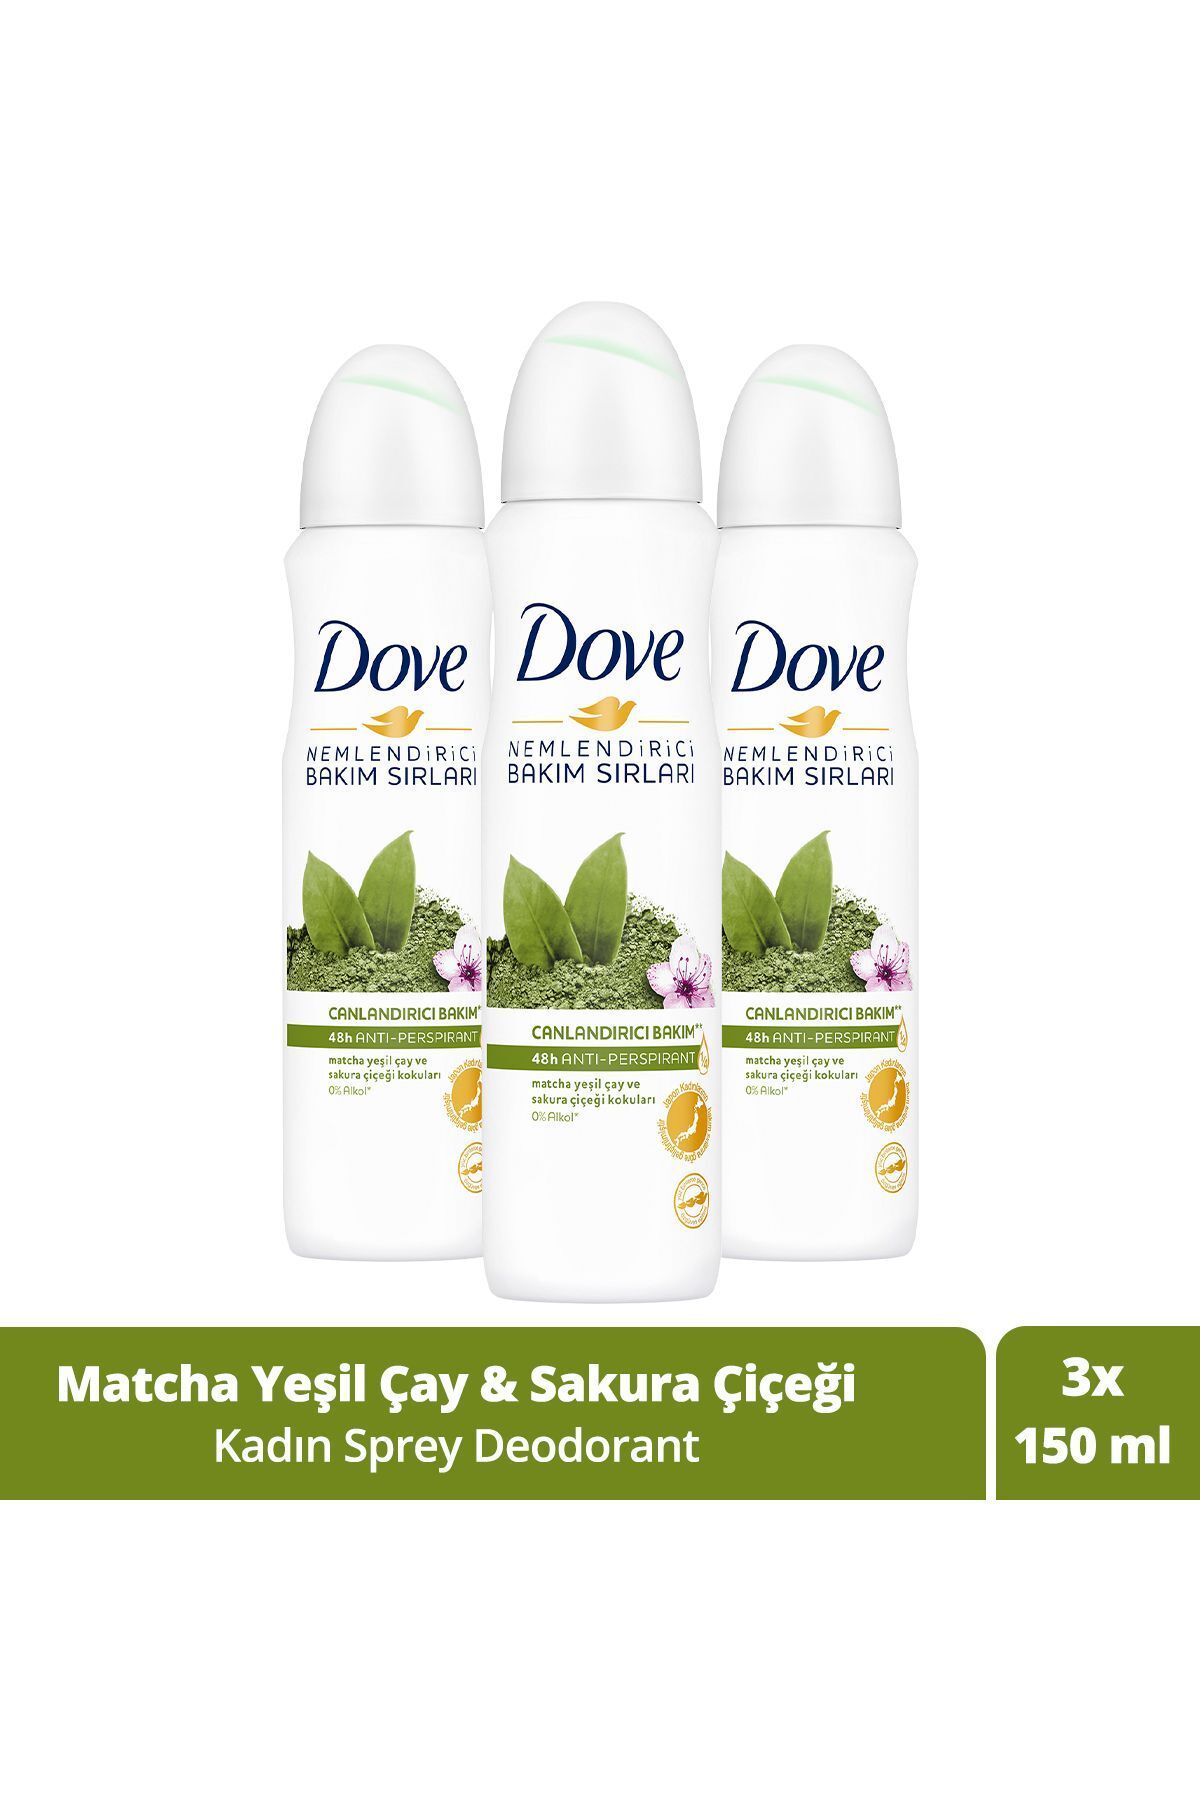 Dove Kadın Sprey Deodorant Canlandırıcı Bakım Matcha Yeşil Çay Ve Sakura Çiçeği 150 ml X3 Adet